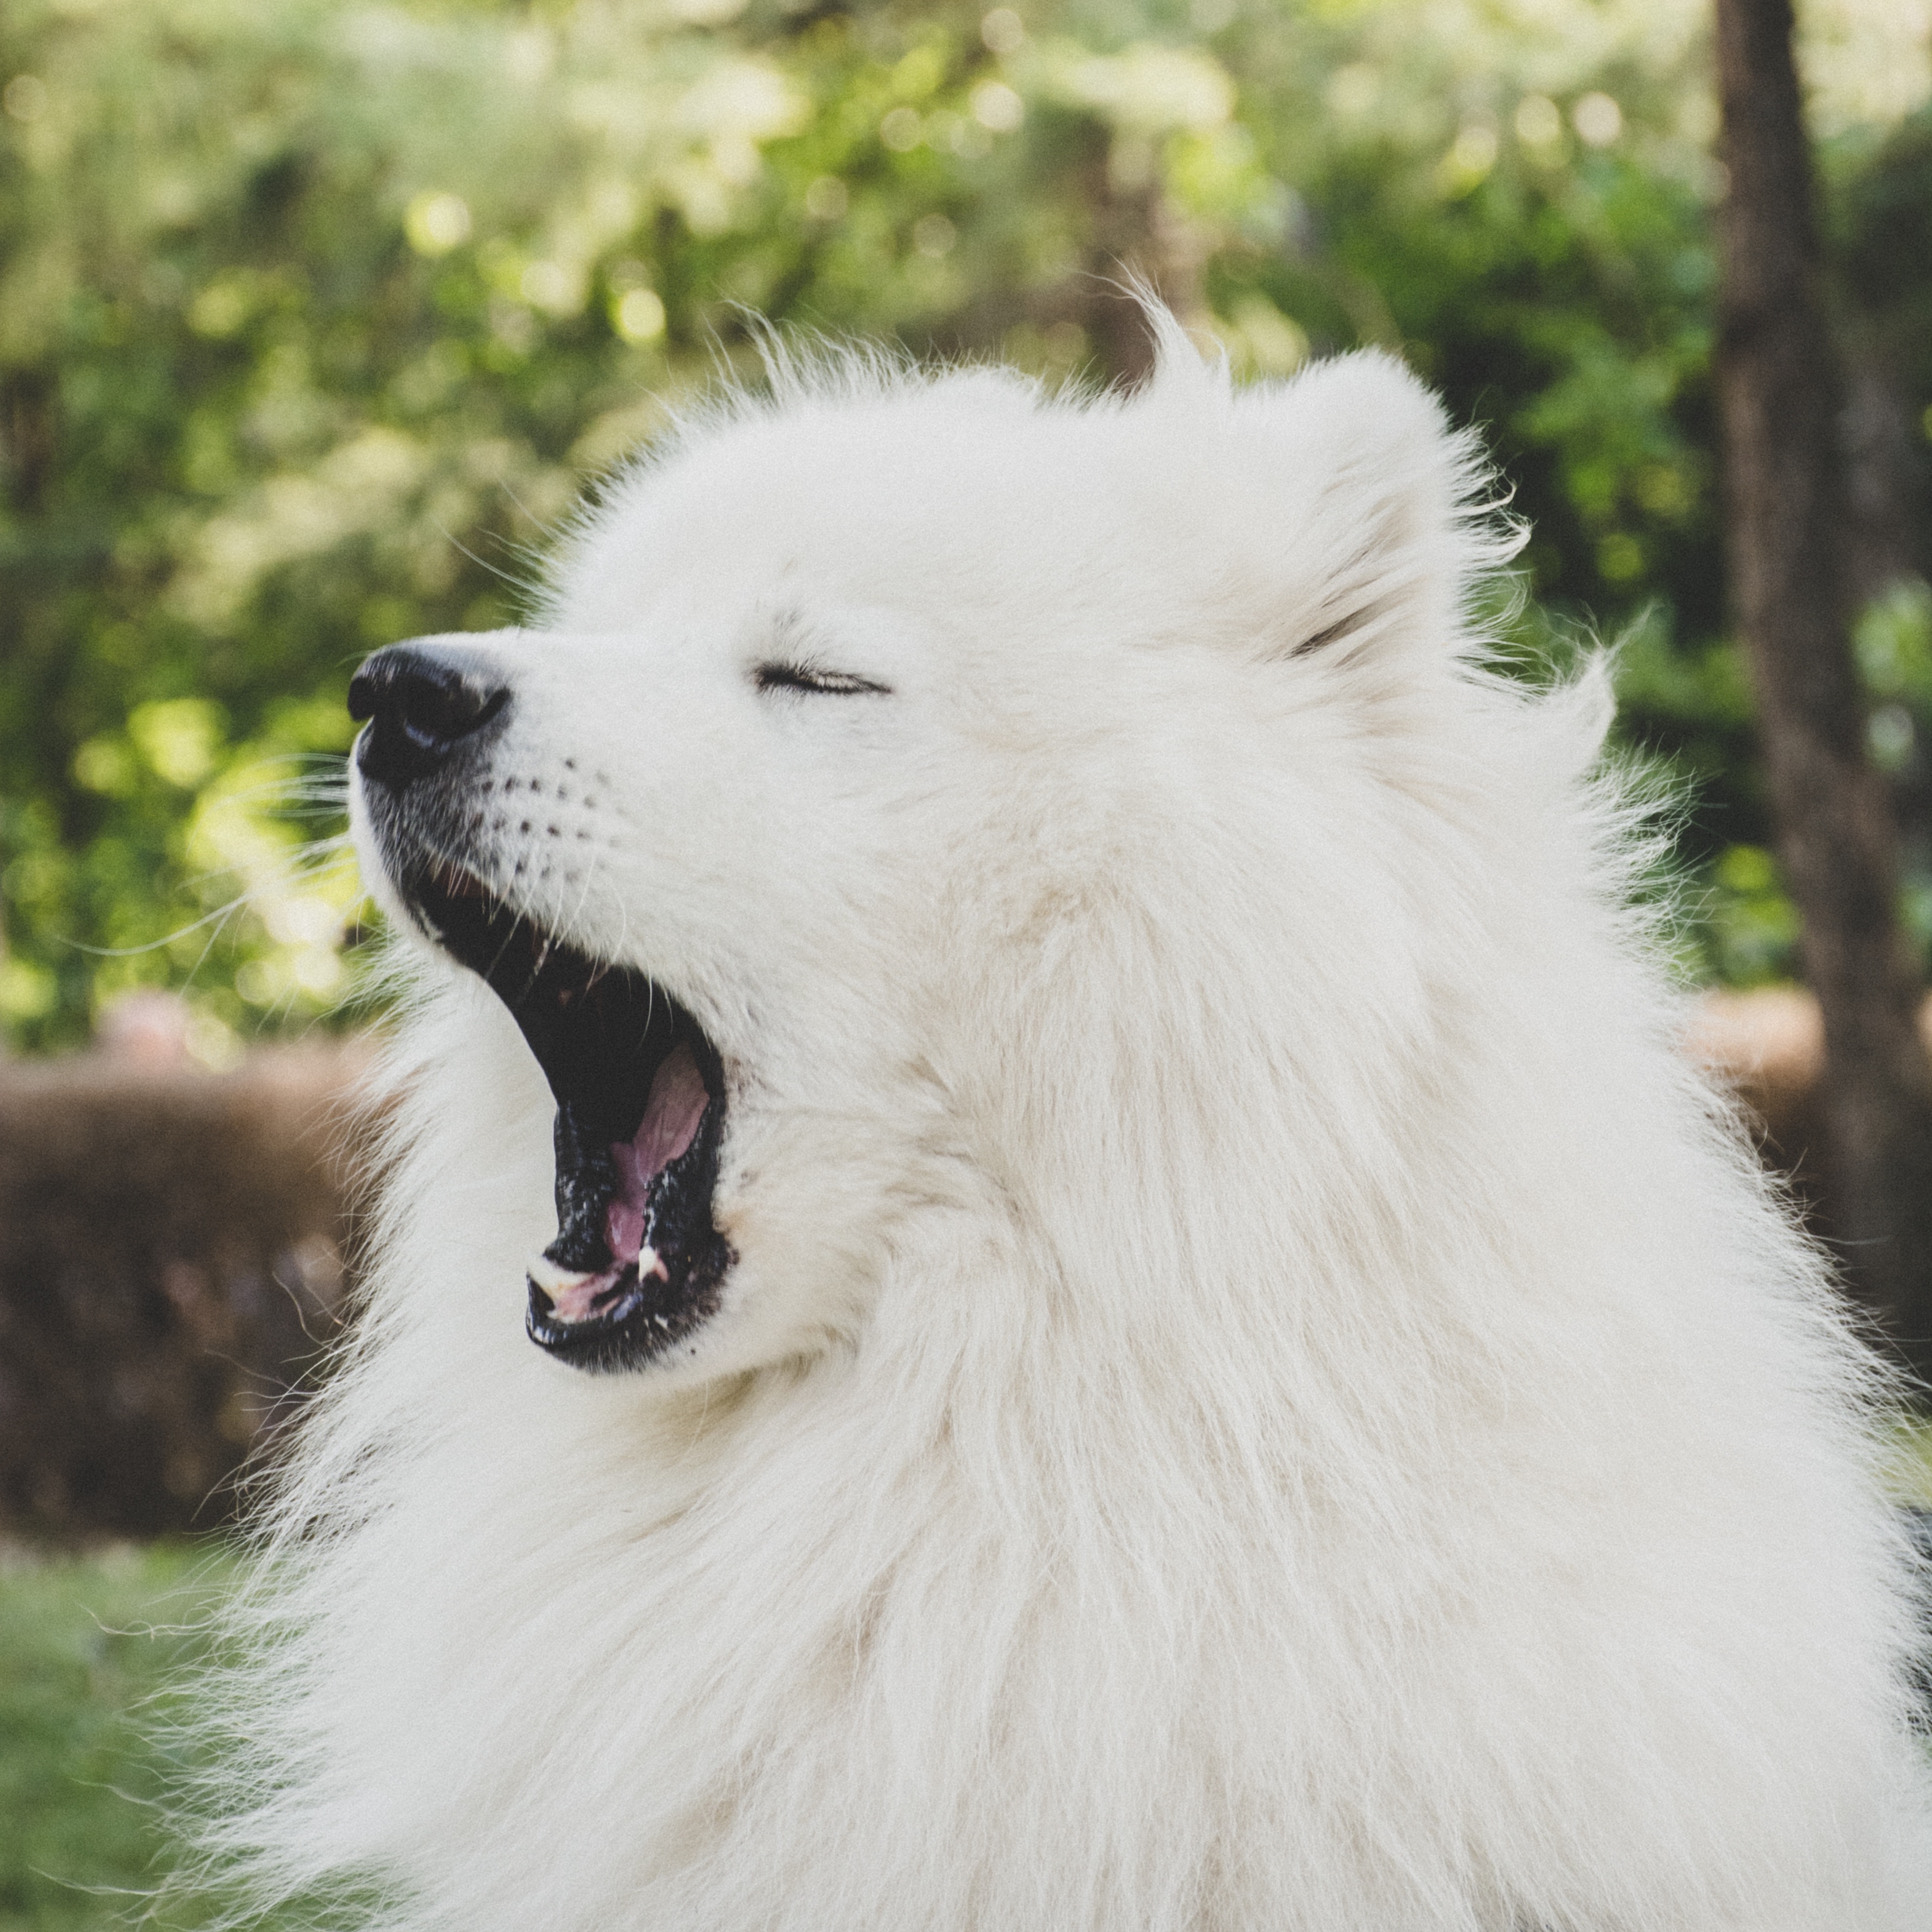 Wallpaper Japanese Spitz Dog Yawn Cute Fluffy Cute Japanese Spitz Dog 3415x3415 Wallpaper Teahub Io